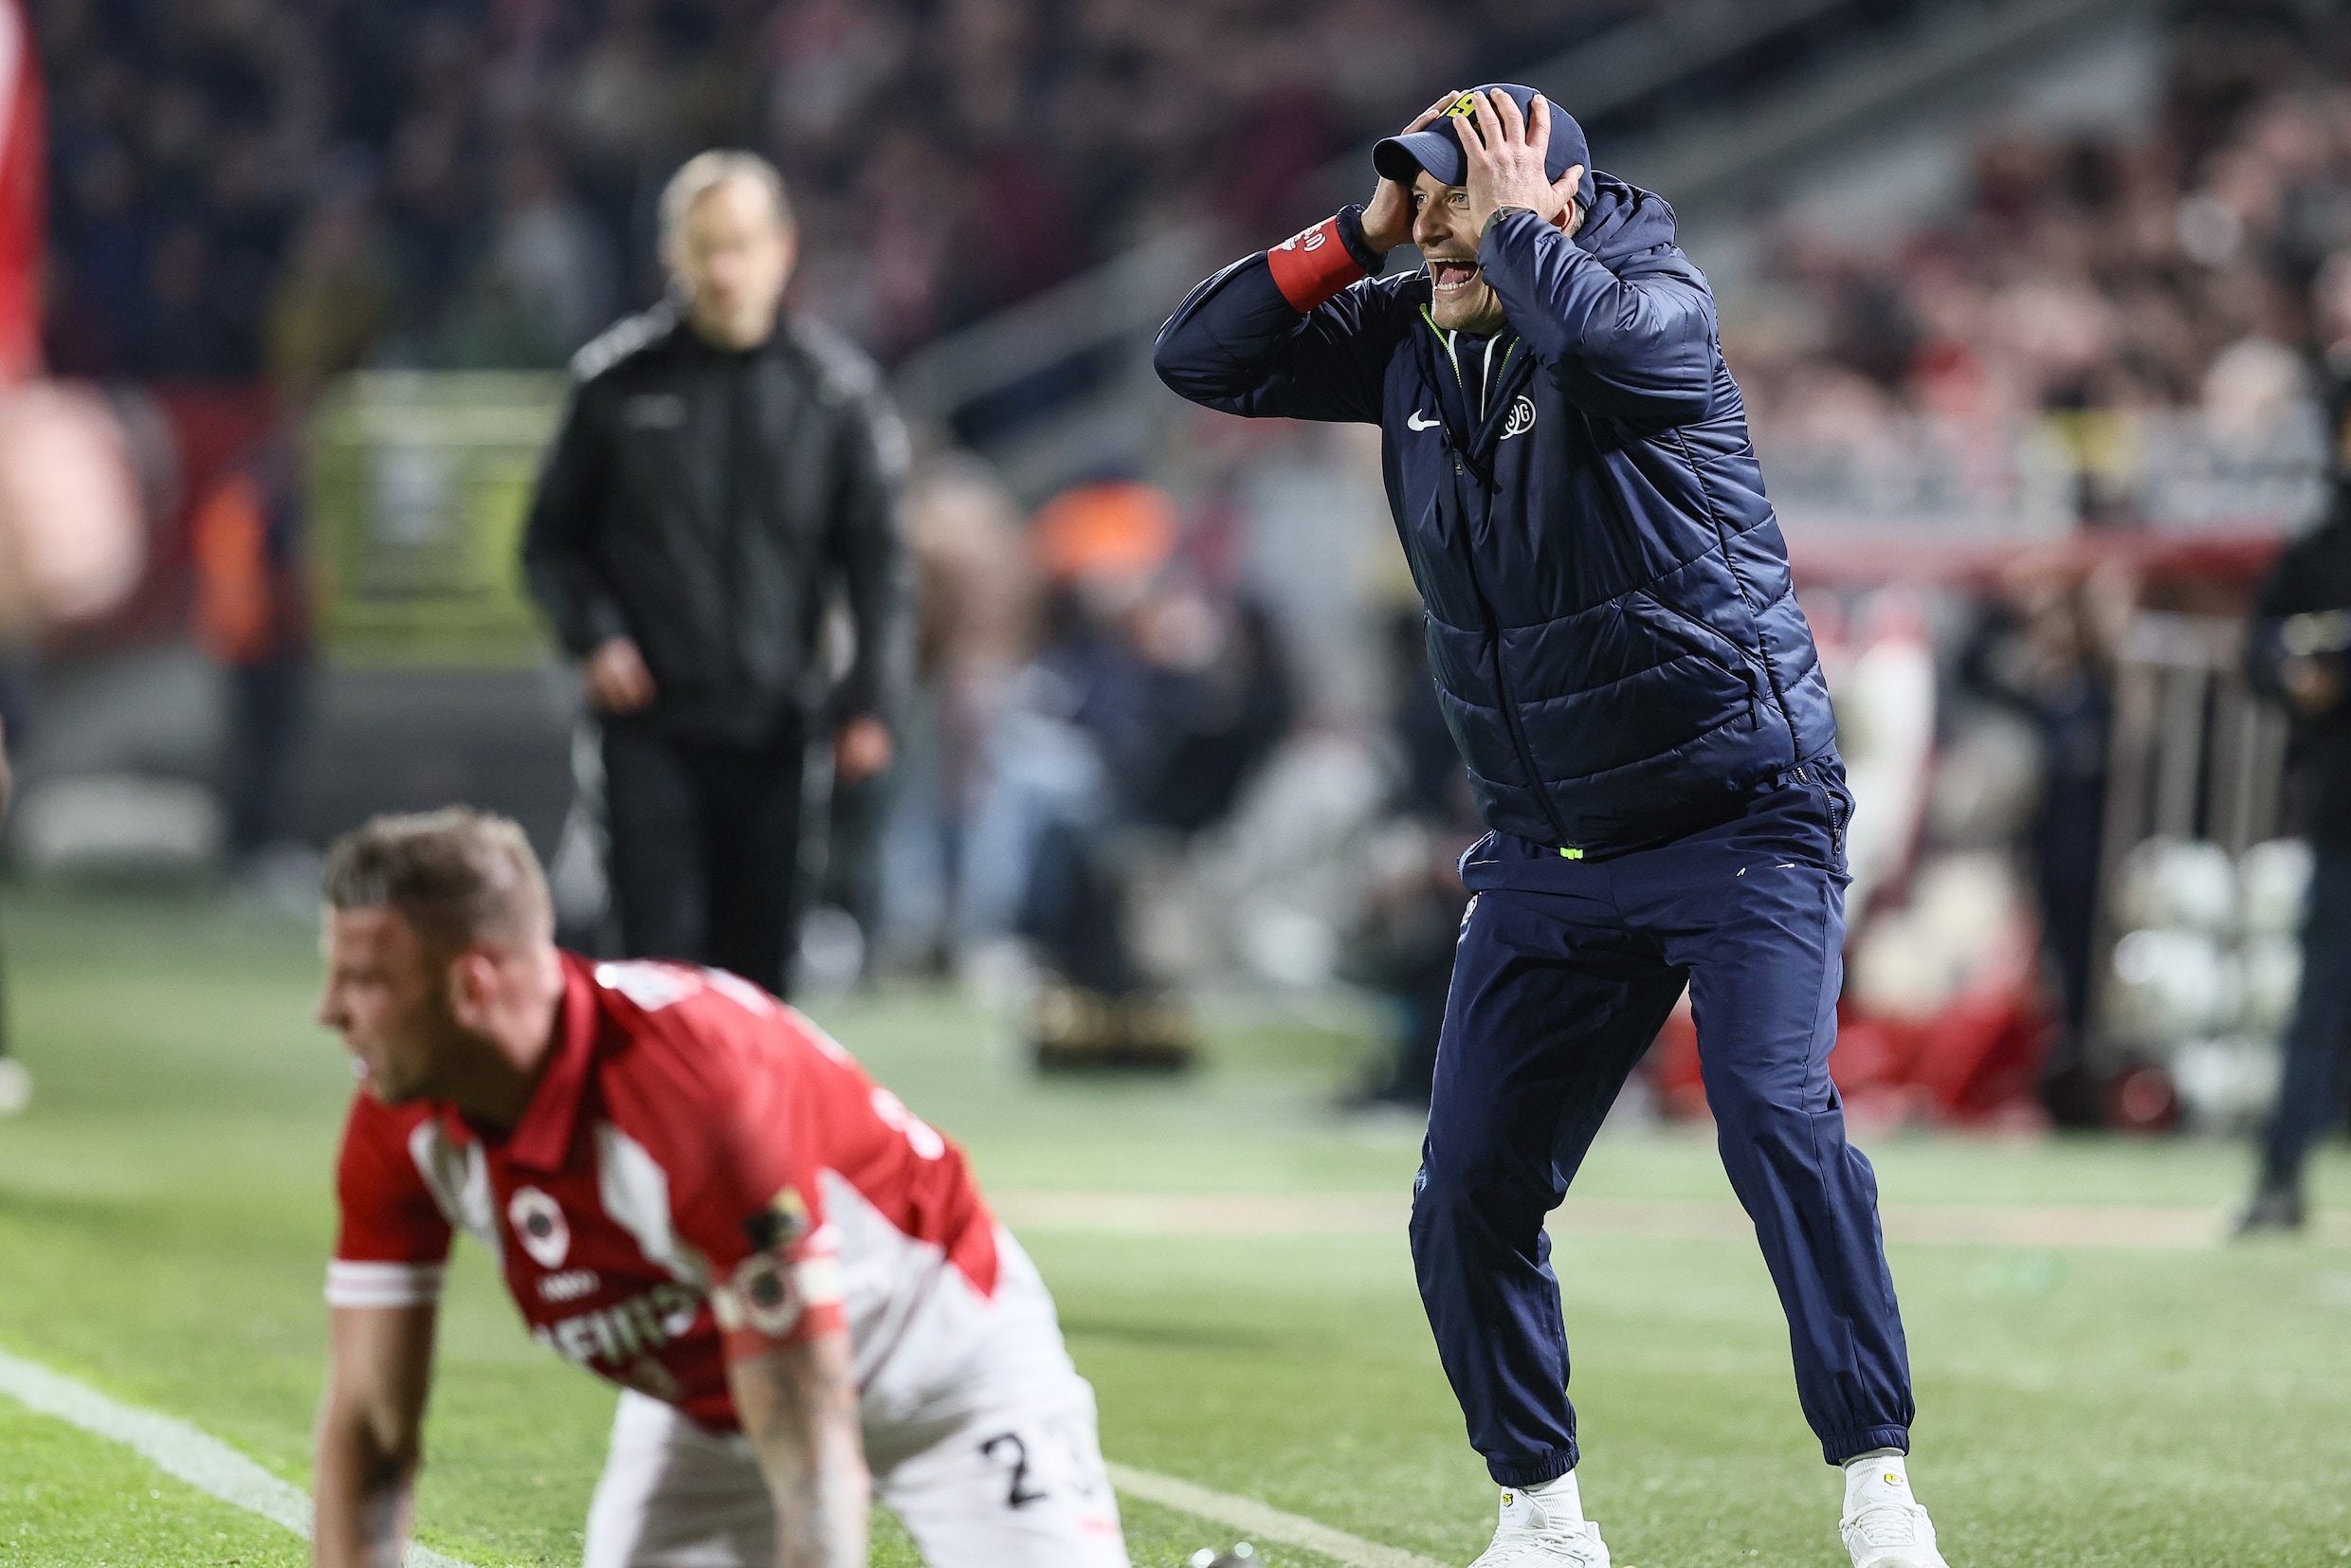 Union spoelt reeks nederlagen door met 0-3-zege tegen Antwerp en blijft in titelrace